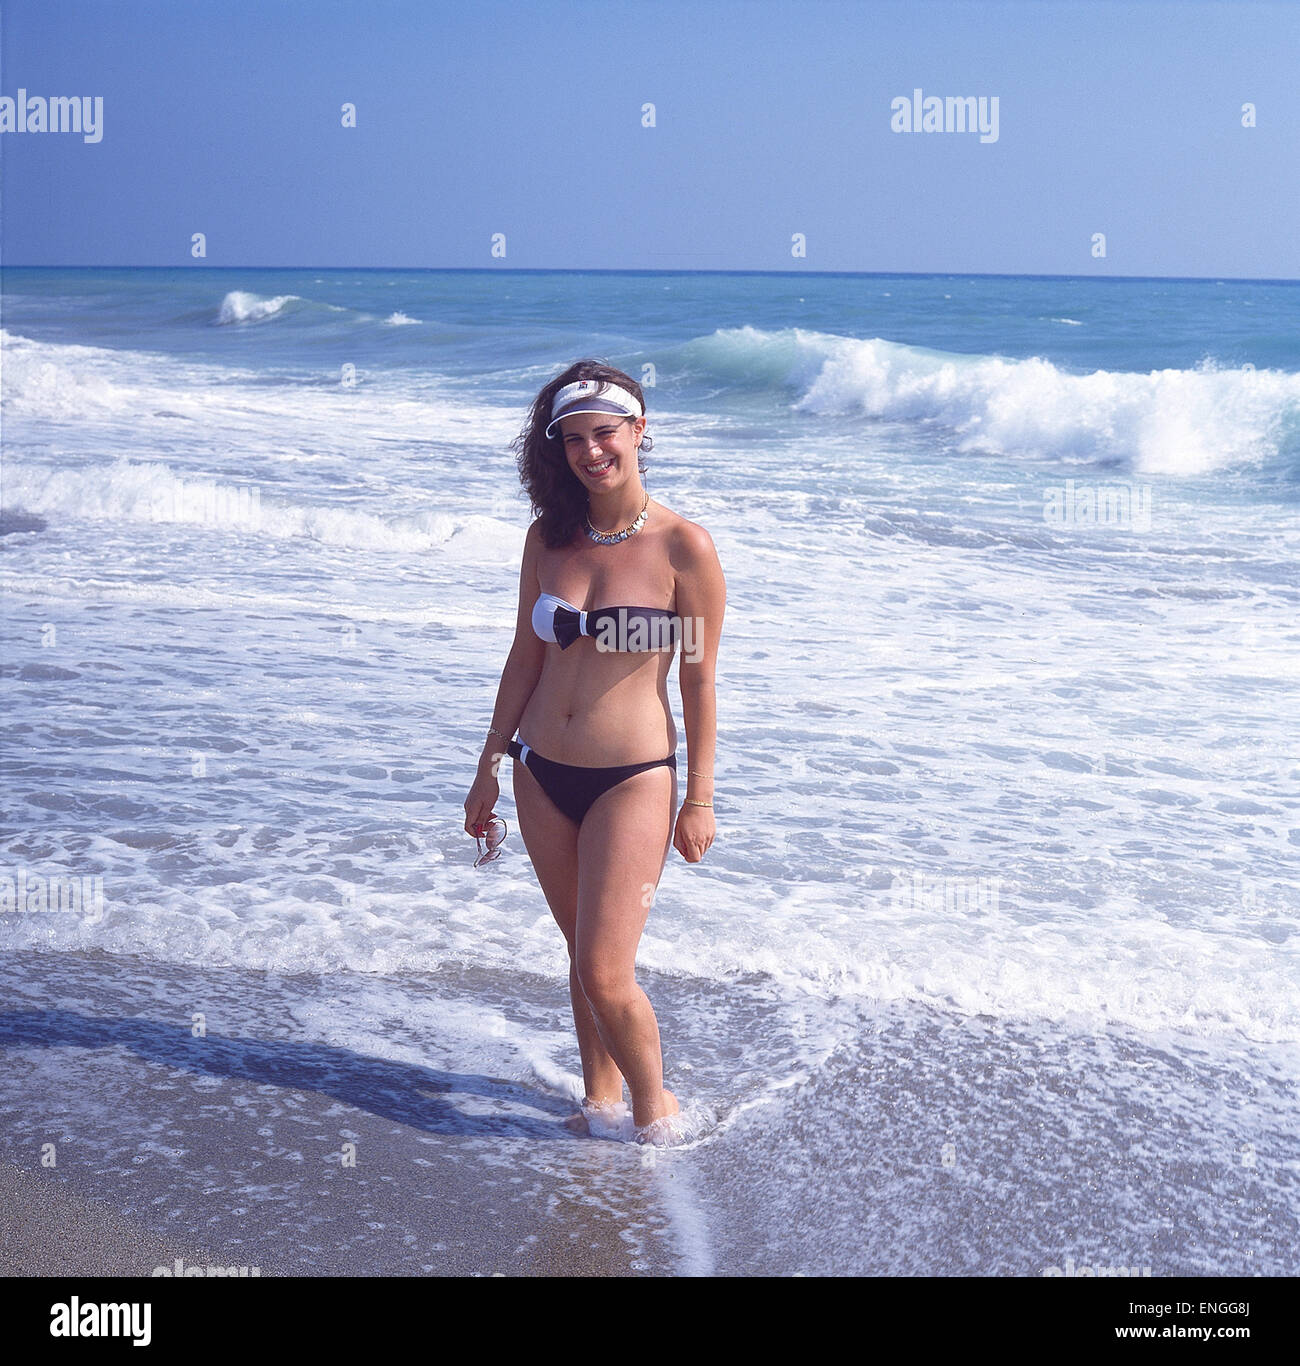 Türkei, Alanja, am Meer stehend Bikini-Mädchen Fotografía de stock - Alamy